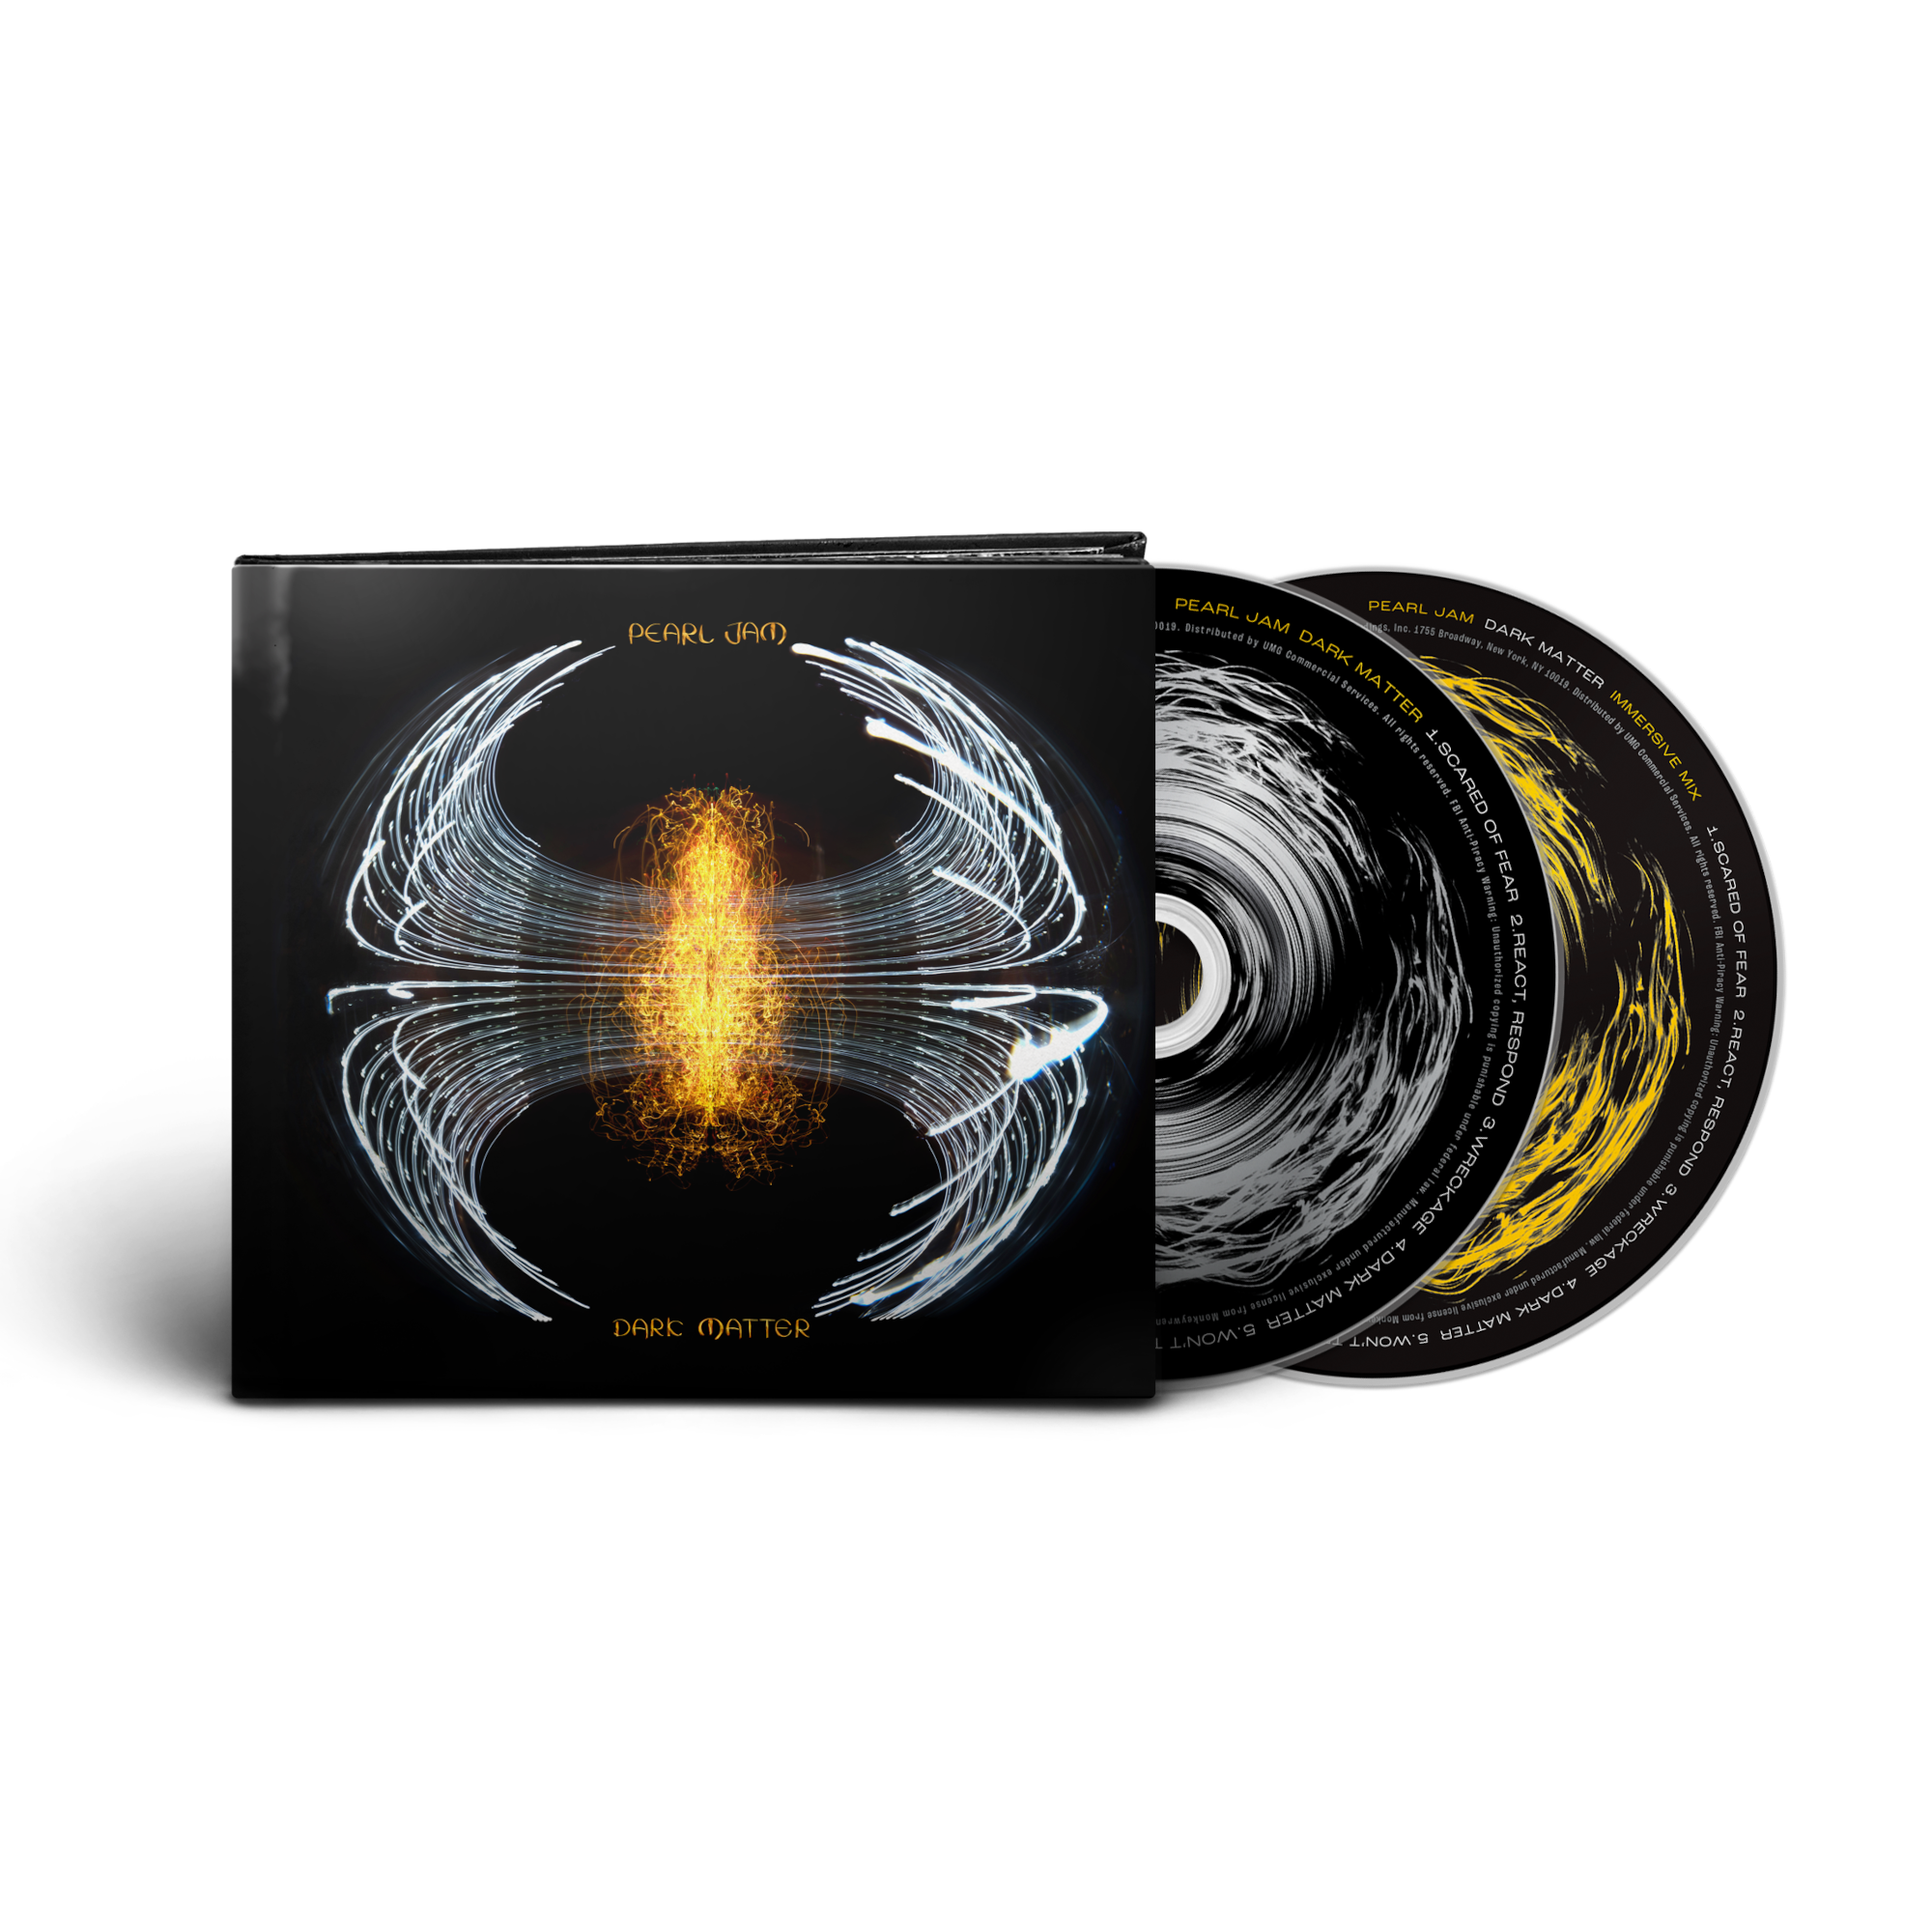 Pearl Jam Official Shop Dark Matter Pearl Jam Deluxe CD